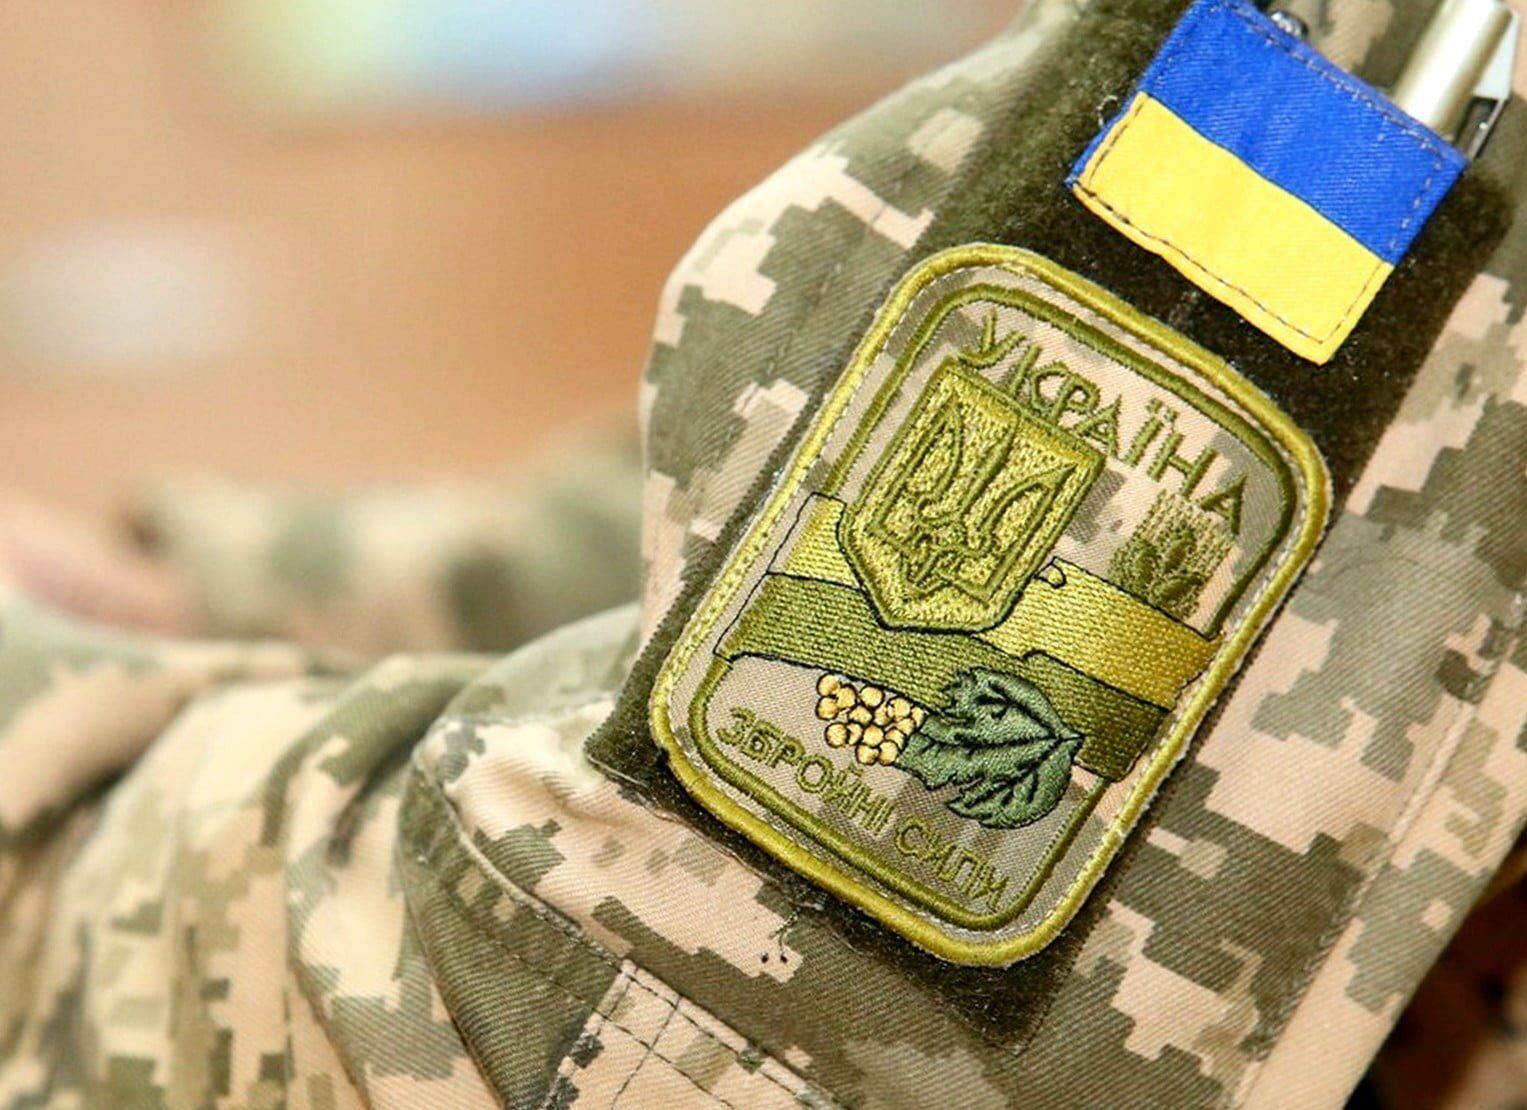  Збройні сили України Фото: пресцентр ЗСУ